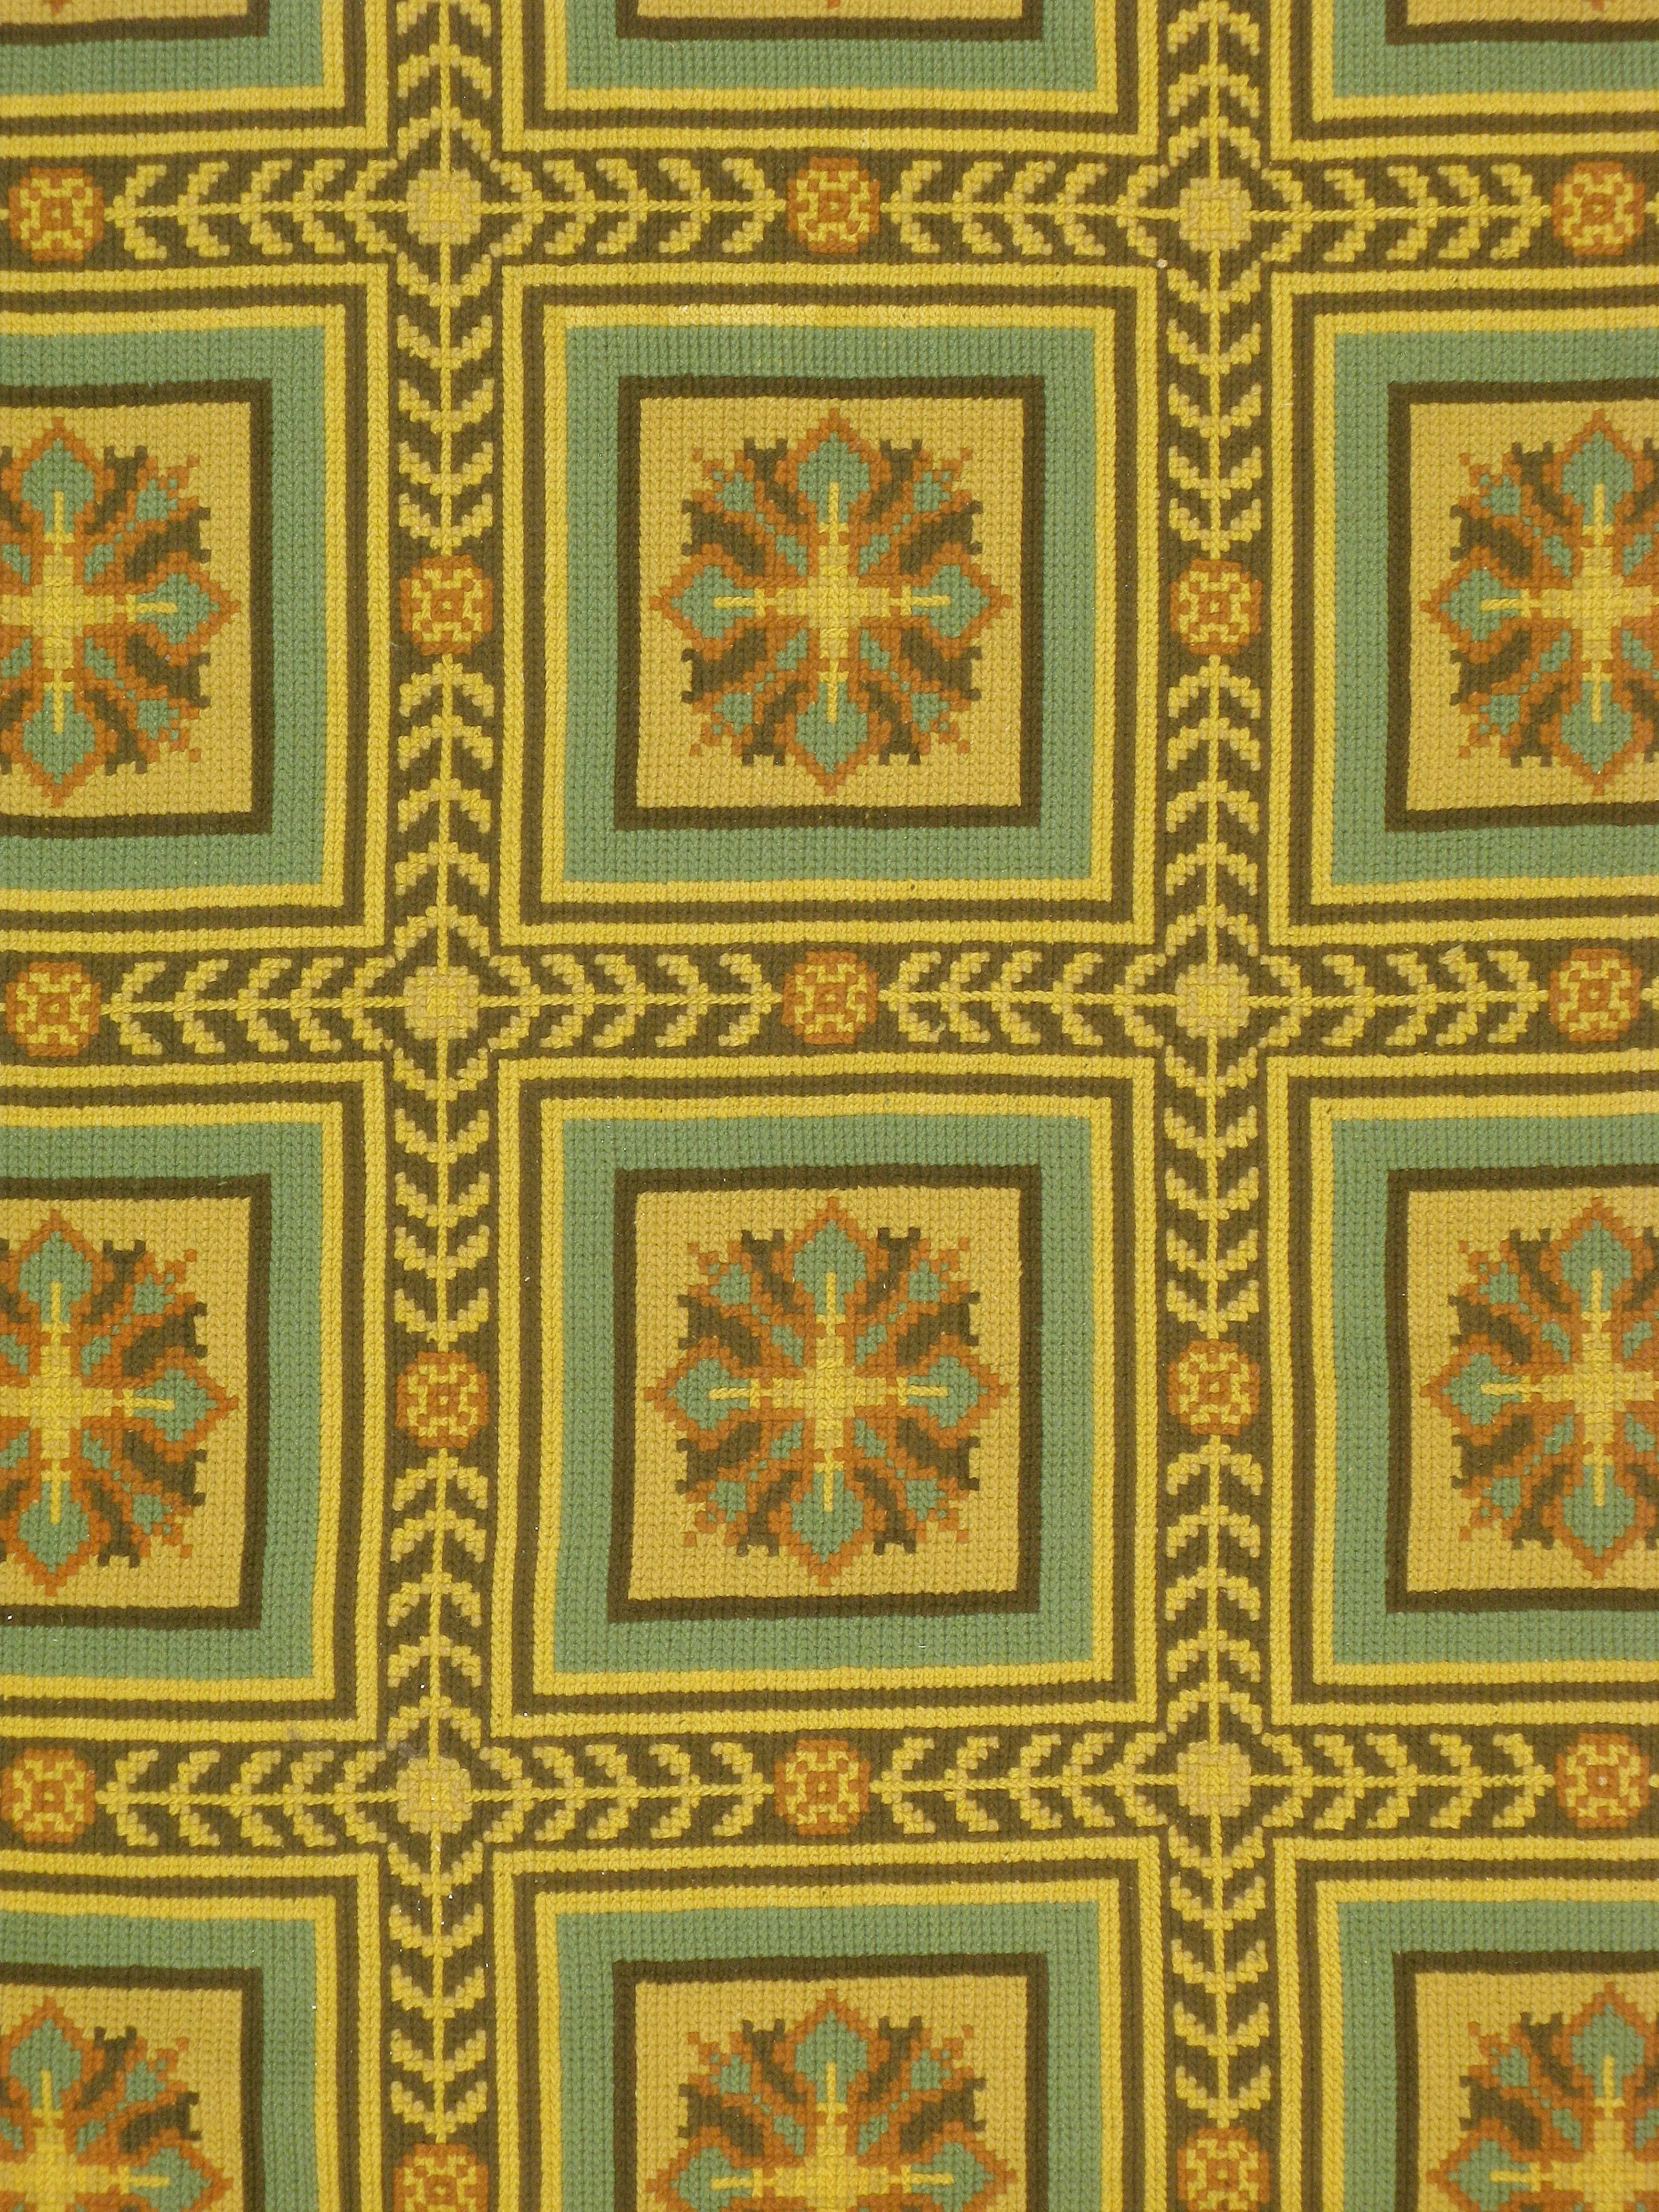 portuguese needlepoint rugs